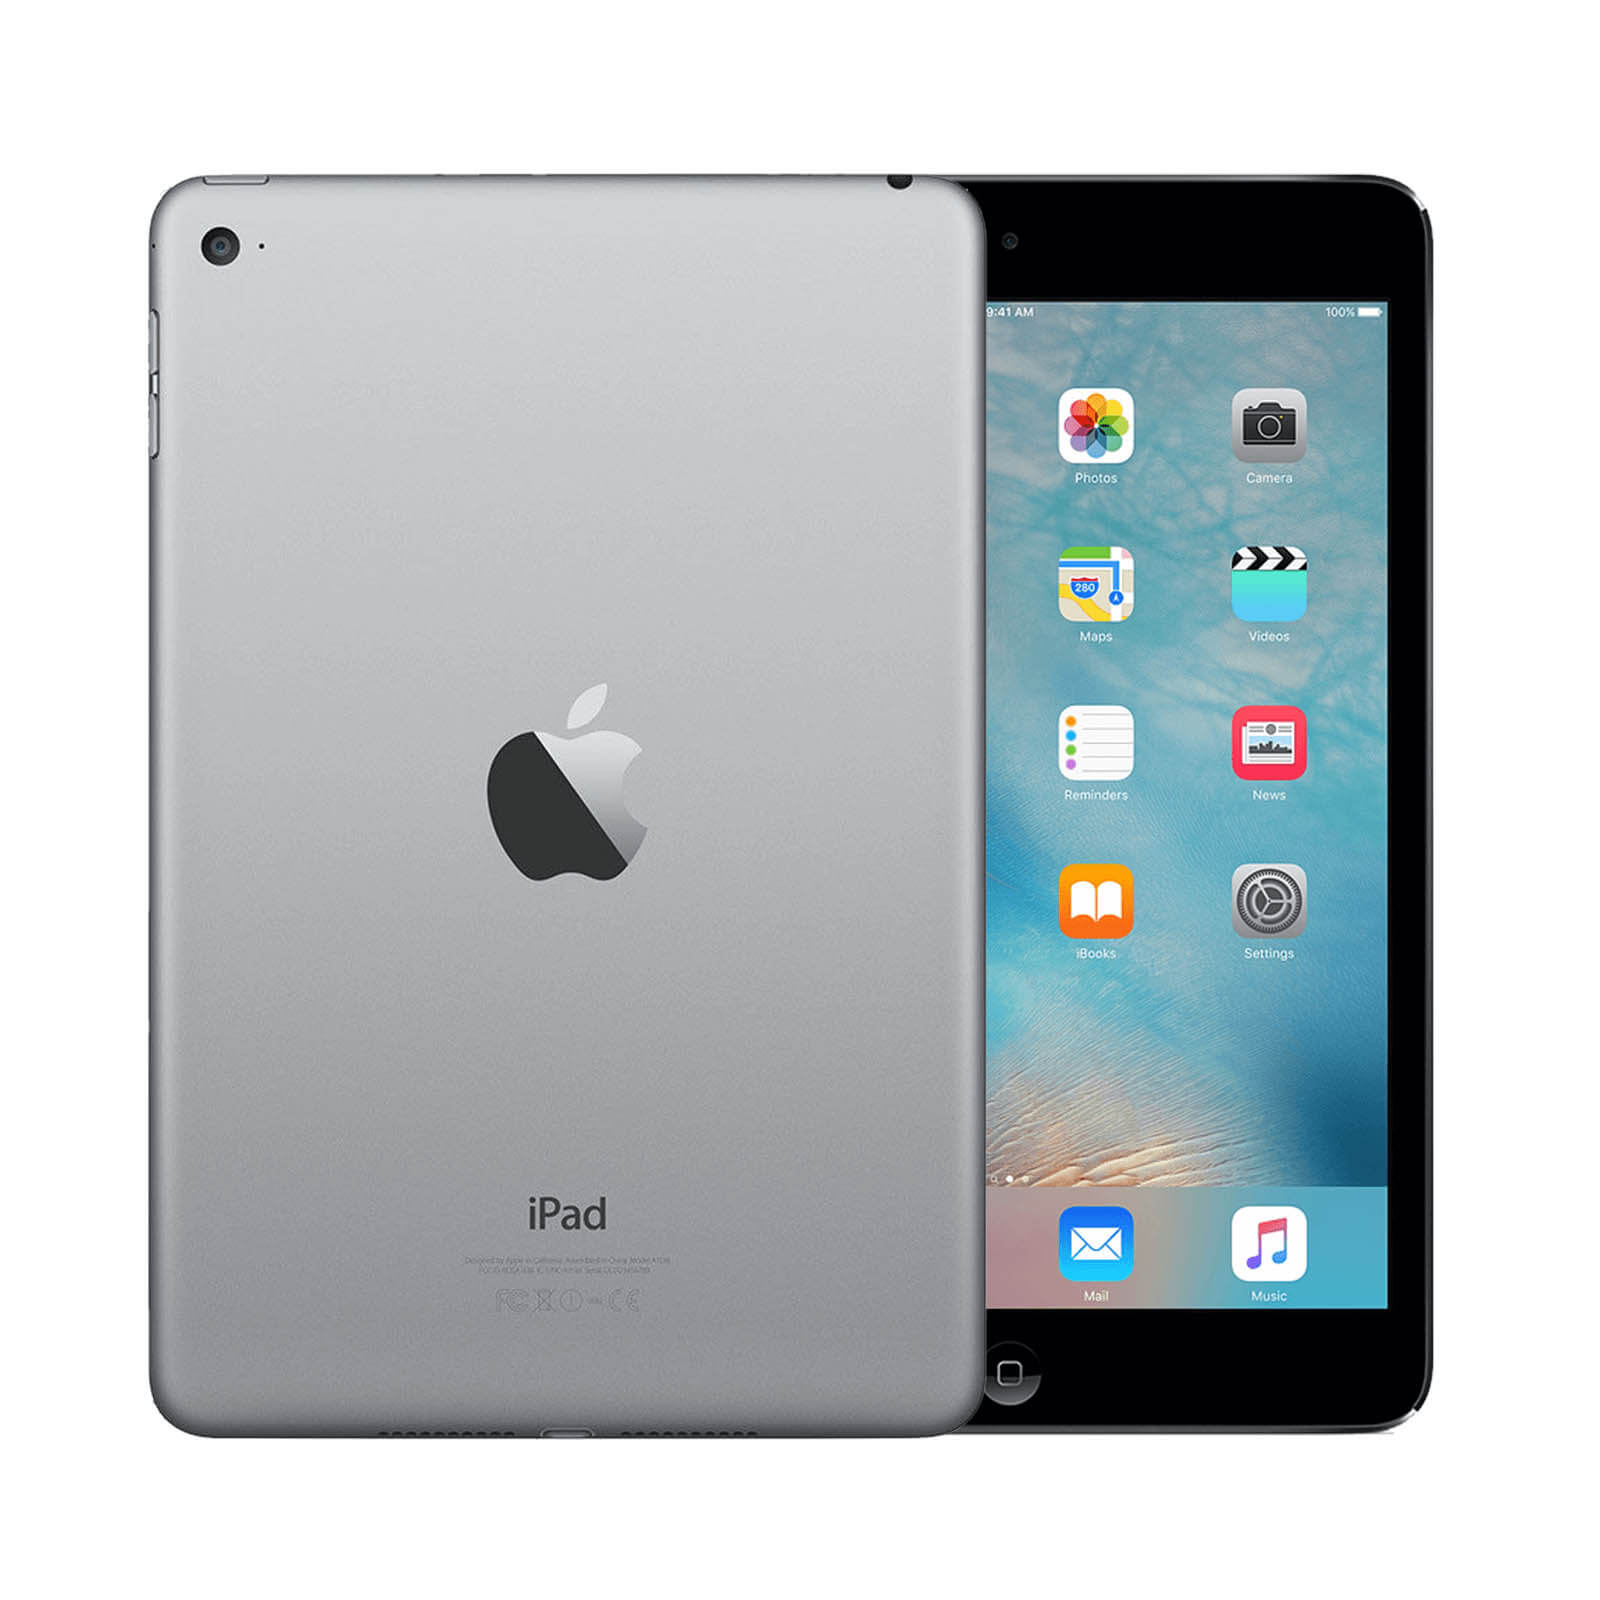 Apple iPad Mini 4 16GB Space Grey WiFi - Good 16GB Space Grey Good